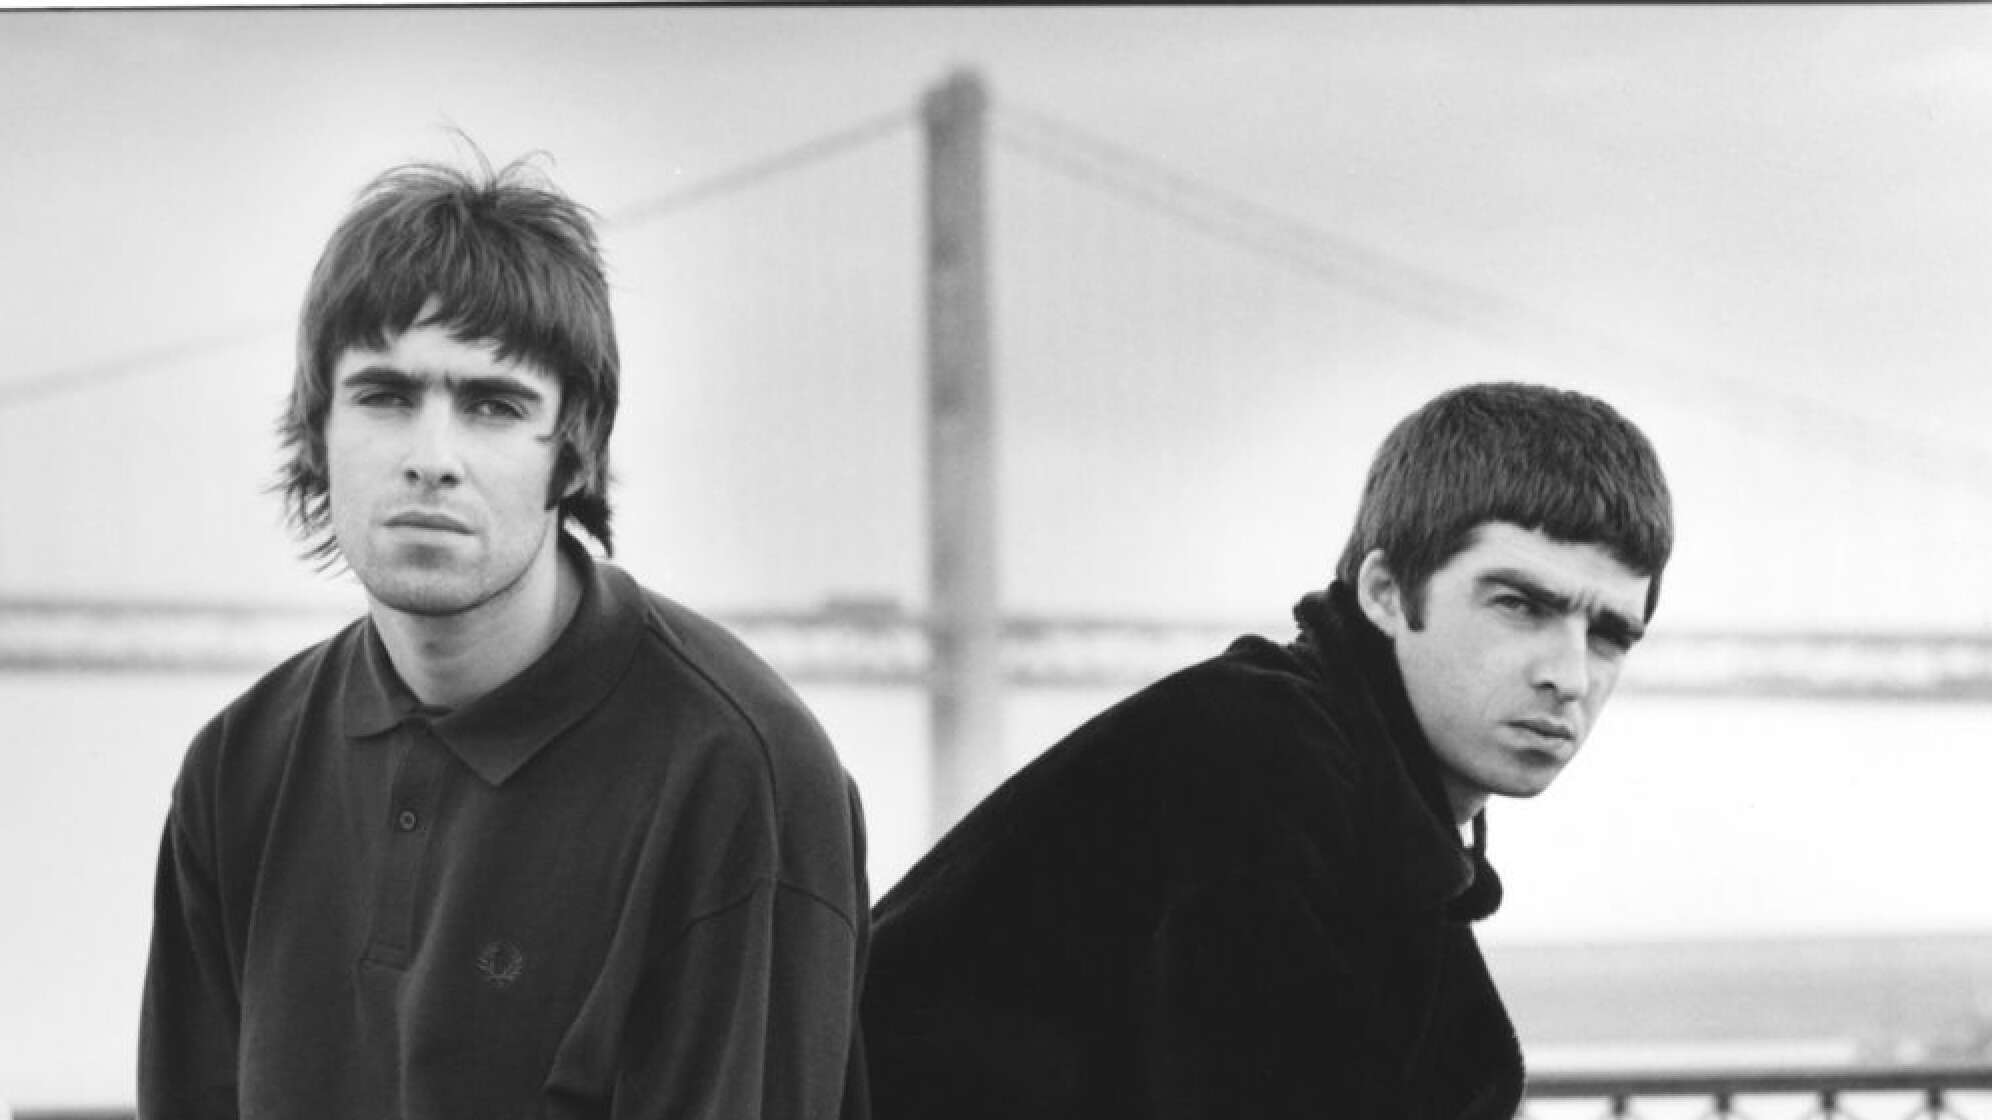 Noel und Liam Gallagher sitzend auf Bank, mit ernstem Blick